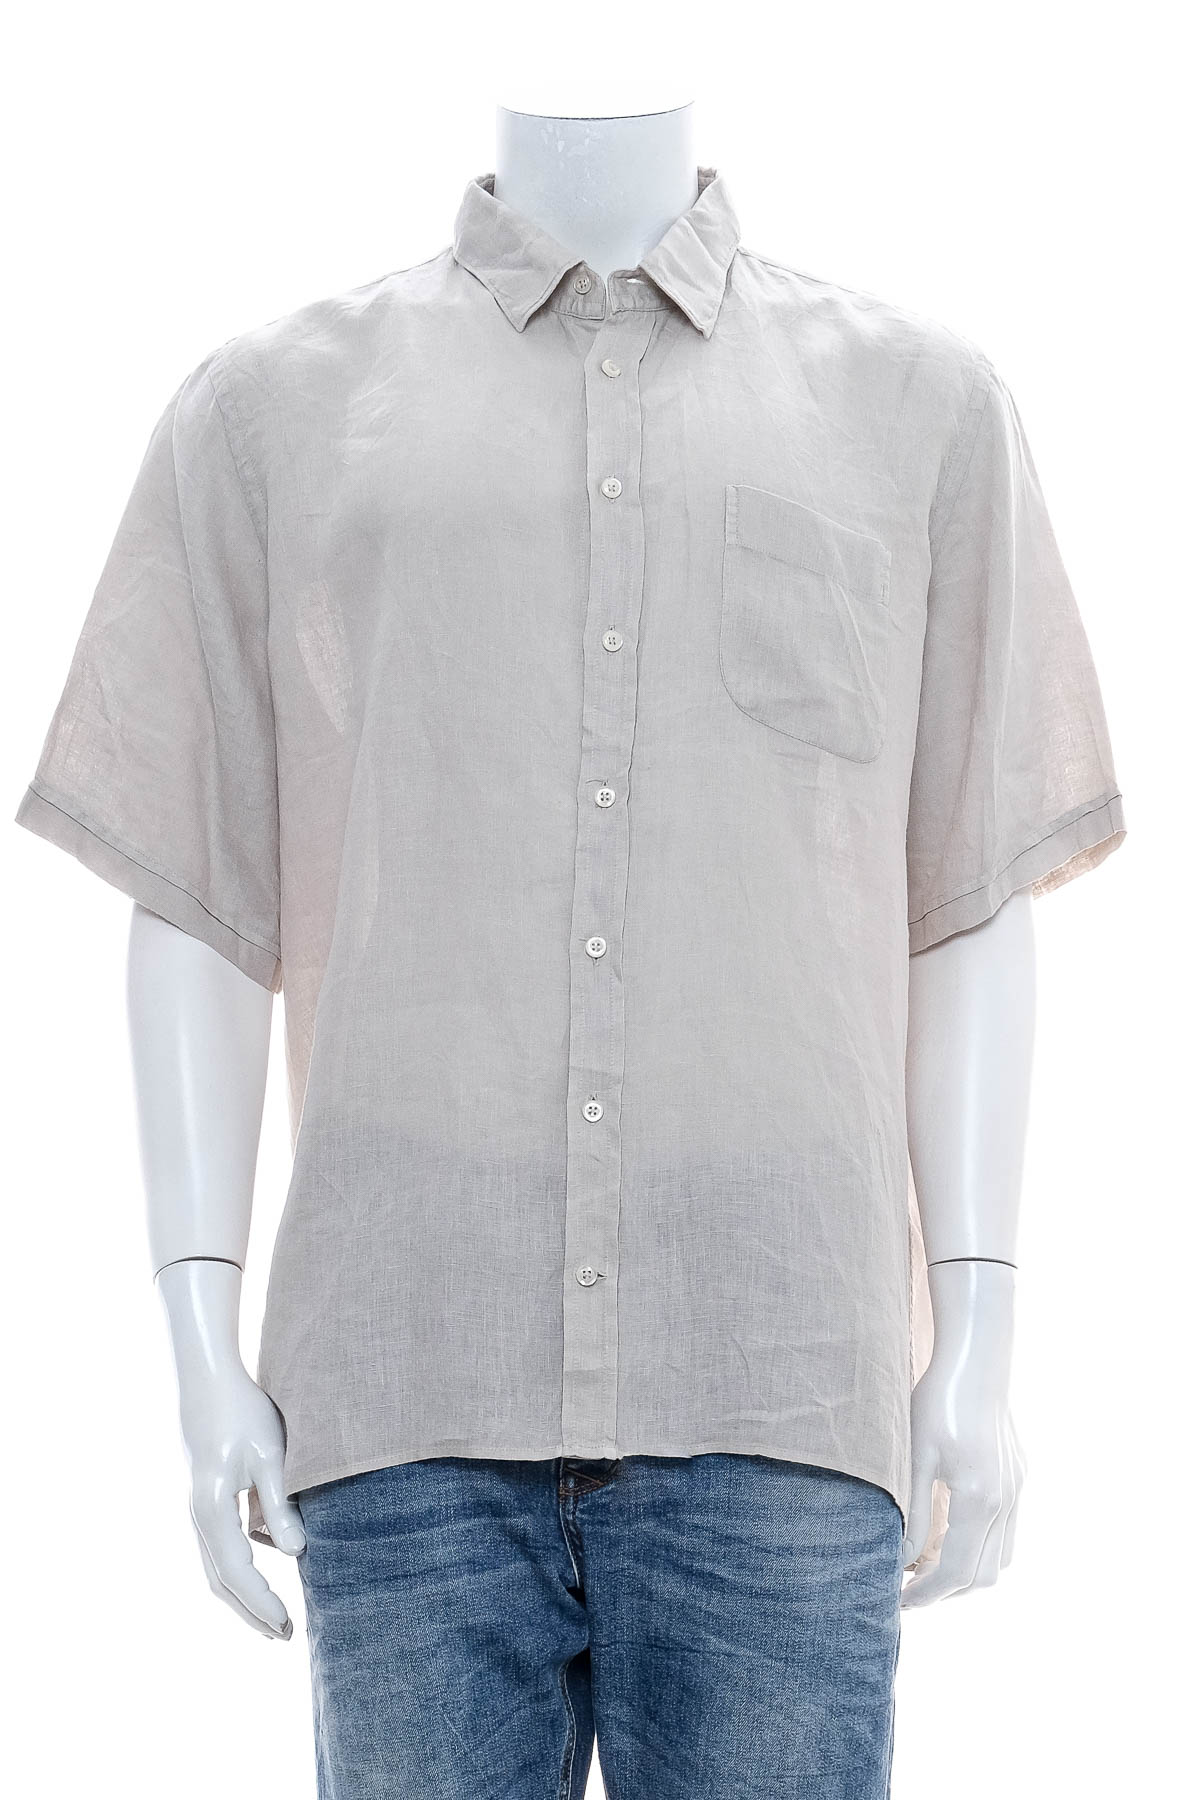 Ανδρικό πουκάμισο - Dorani - 0